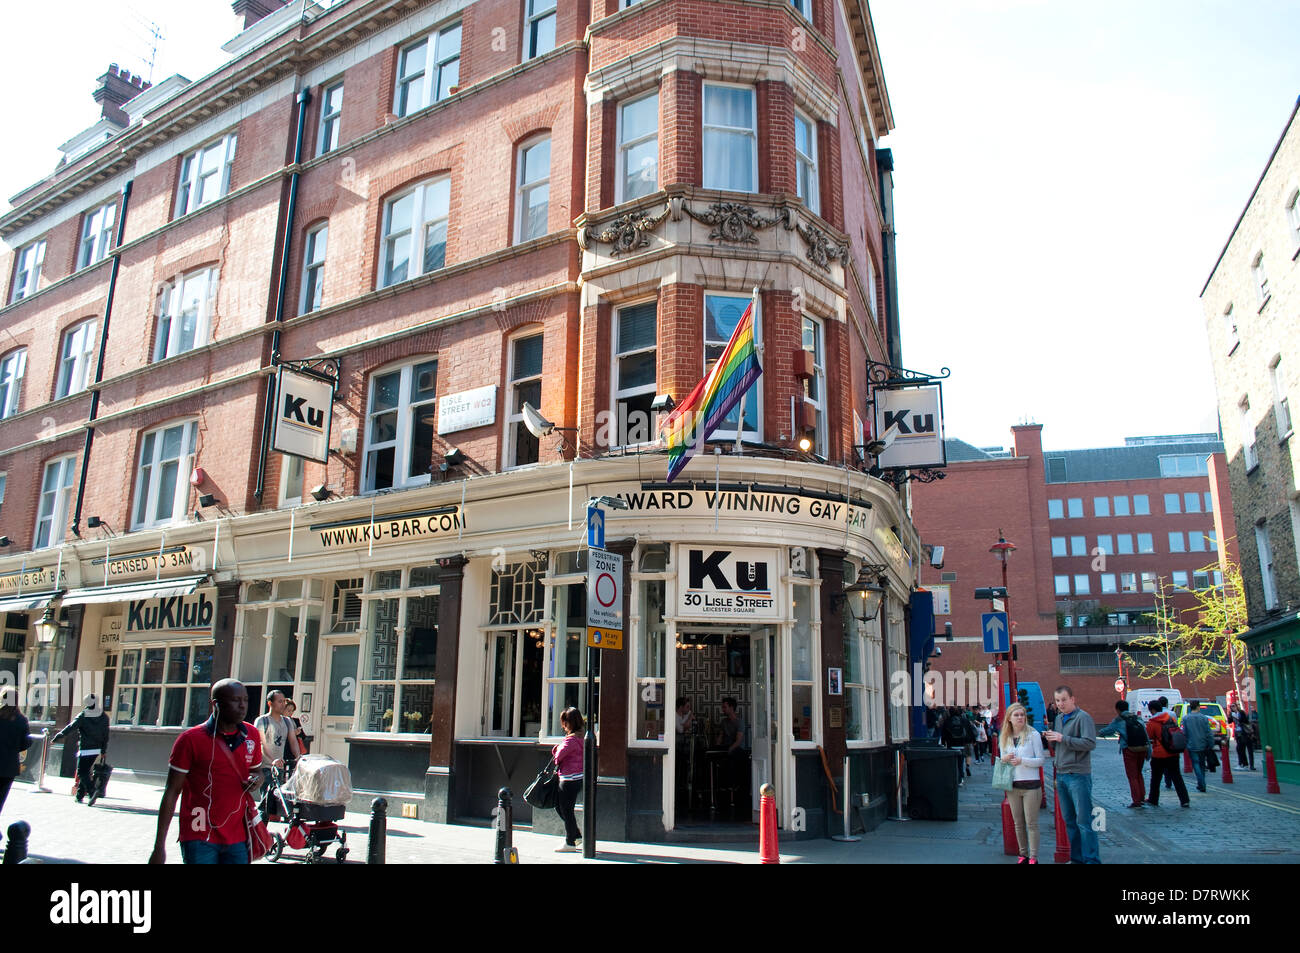 Ku bar, Lisle Street, Soho, London, UK Stock Photo